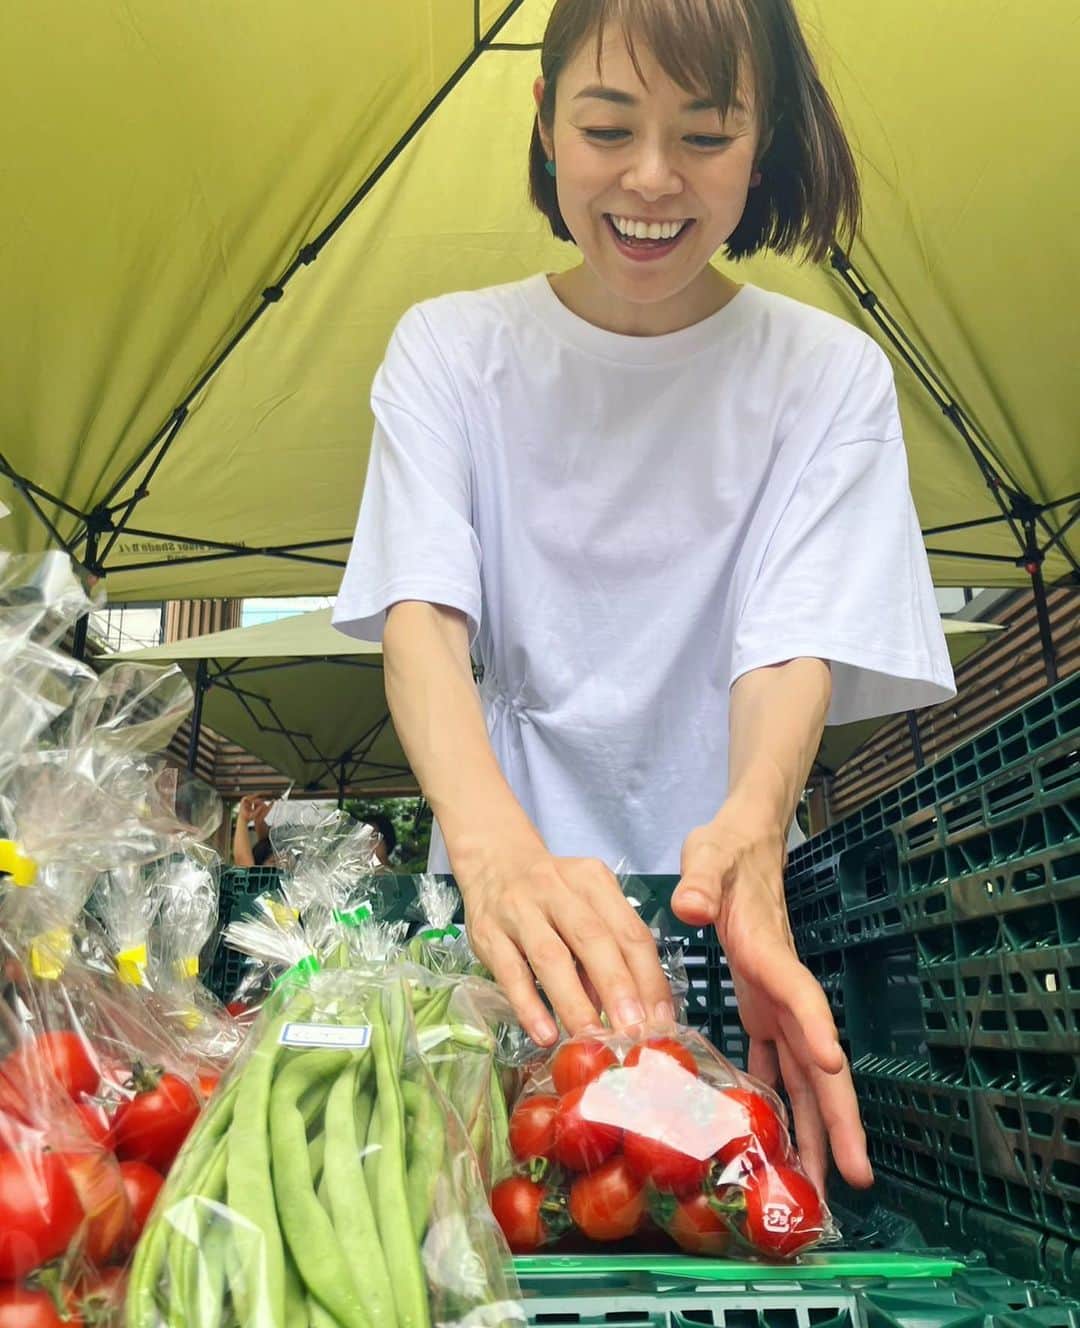 川瀬良子のインスタグラム：「こんにちは〜😊  7月8日(土)東京渋谷・北谷公園で開催された ジンナンマーケットに、栃木県益子町のお野菜を並べた青果店を出店しました！  栃木県益子町にお世話になっている農家さんや地域のみなさんがいるので、益子町のおいしい野菜を、渋谷のみなさんに知ってもらおう！と、 出店が決定🎉  渋谷という事は、一人暮らしの若い人がきっと多いから、キャベツやカボチャは丸ごと1つではなく、カットした方が手にとってくれるのでは…？ 野菜詰め合わせのセット売りよりも、好きなものを選べる方がイベント性があるのでは？などなど、 みんなで売り方を考える時間も楽しかった〜♪  当日は、早朝から益子チームが新鮮なお野菜を車で運んで下さり（本当にありがとうございました👏🏻）私たちは車からブースまで運び（野菜も数があると重たいんですよね〜！）野菜がより一層美味しそうに見えるように彩りを考え陳列。そして、お客さんに売る。 一通り全てを体験したのですが、お客さんに野菜をアピールするためには野菜の特徴や、どんな農家さんが作っているのかなど、事前に頭に入れておくことがいかに大切かを痛感しました！  あるお客さまに「この2種類のカボチャの違いはなぁに？」と聞いて頂いたのですが、すぐに違いを答えられず反省、猛省。 益子チームに確認したら、ホクホクしているのがお好きでしたらこちらですよ〜！と丁寧に説明して下さり、感動しました！  野菜を作る農家さんがいて、さらに運ぶ人、陳列してくれる人、売る人がいて、私たちは買う事ができる。ということも改めて実感できたとても学びの多い一日になりました！  次の日に「昨日買ったナス。おいしかったよ〜！」とお客さんに声をかけていただいたのですが、それがうれしくてうれしくて🤩🥳🤩🥳  ナス農家さんに、しっかり伝えました！  このような野菜を通じた交流も、素敵ですよね〜！  またどこかで出店などありましたらお知らせしますね♪  その時は、完璧な接客ができるように頑張るぞぉ〜！  チーム益子のみなさま👏🏻事前の打ち合わせや準備、そして当日は暑い中☀️本当にお疲れ様でした！！ありがとうございました！！  そしてそして、お客様、SNSを見て来てくれたみなさまや友人知人、本当にありがとうございました！！  🥒写真5枚目🥒 キュウリ2本を1セットにして袋売りしていたのですが、とても暑い日だったので主催の方が「冷やしキュウリにして売りましょう！」と提案してくださり、どこからともなく入れ物や氷を持って来てくださり“冷やしキュウリはじめました”のポップも作ってくださって、キュウリはあっという間に完敗しました👏🏻 その日の天候に合わせた売り方も学べましたね〜！ そして、渋谷の公園でいろんな方がポリポリとキュウリを食べている姿がとてもユニークで🤣😍 感動しました〜！  🫑🥕🍅🍆  #栃木県 #益子町 #ましこ #道の駅ましこ @michinoeki_mashiko  #渋谷 #北谷公園 @shibuya_kitaya_park  #ジンナンマーケット #jinnanmarket  #青果店 #野菜 #農業 #農家 さん  @yuko_mindleader  @irokawa1008  ありがとうございました😍  @wmg._official @sakayori_official  エプロン大活躍でした〜😍」